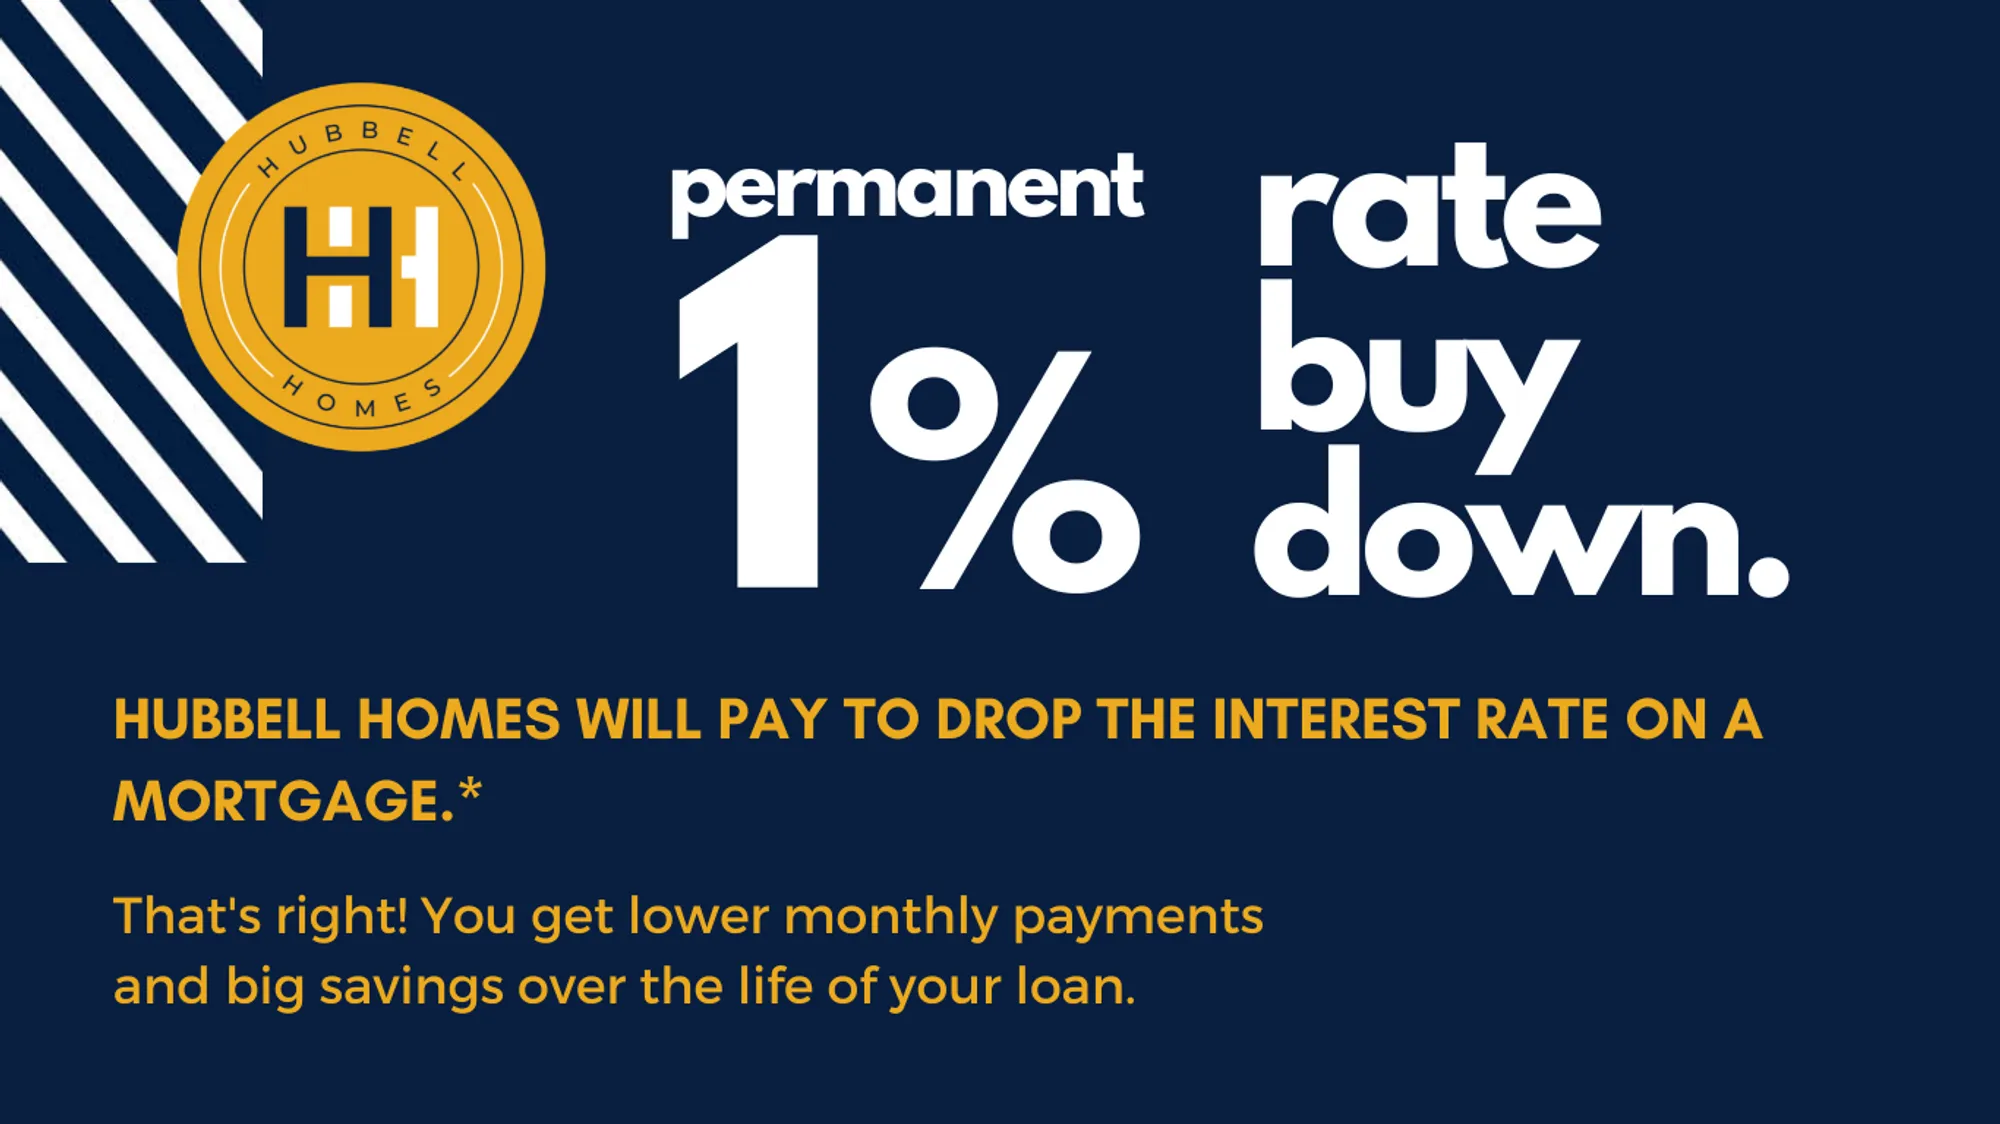 1% Rate Buy Down